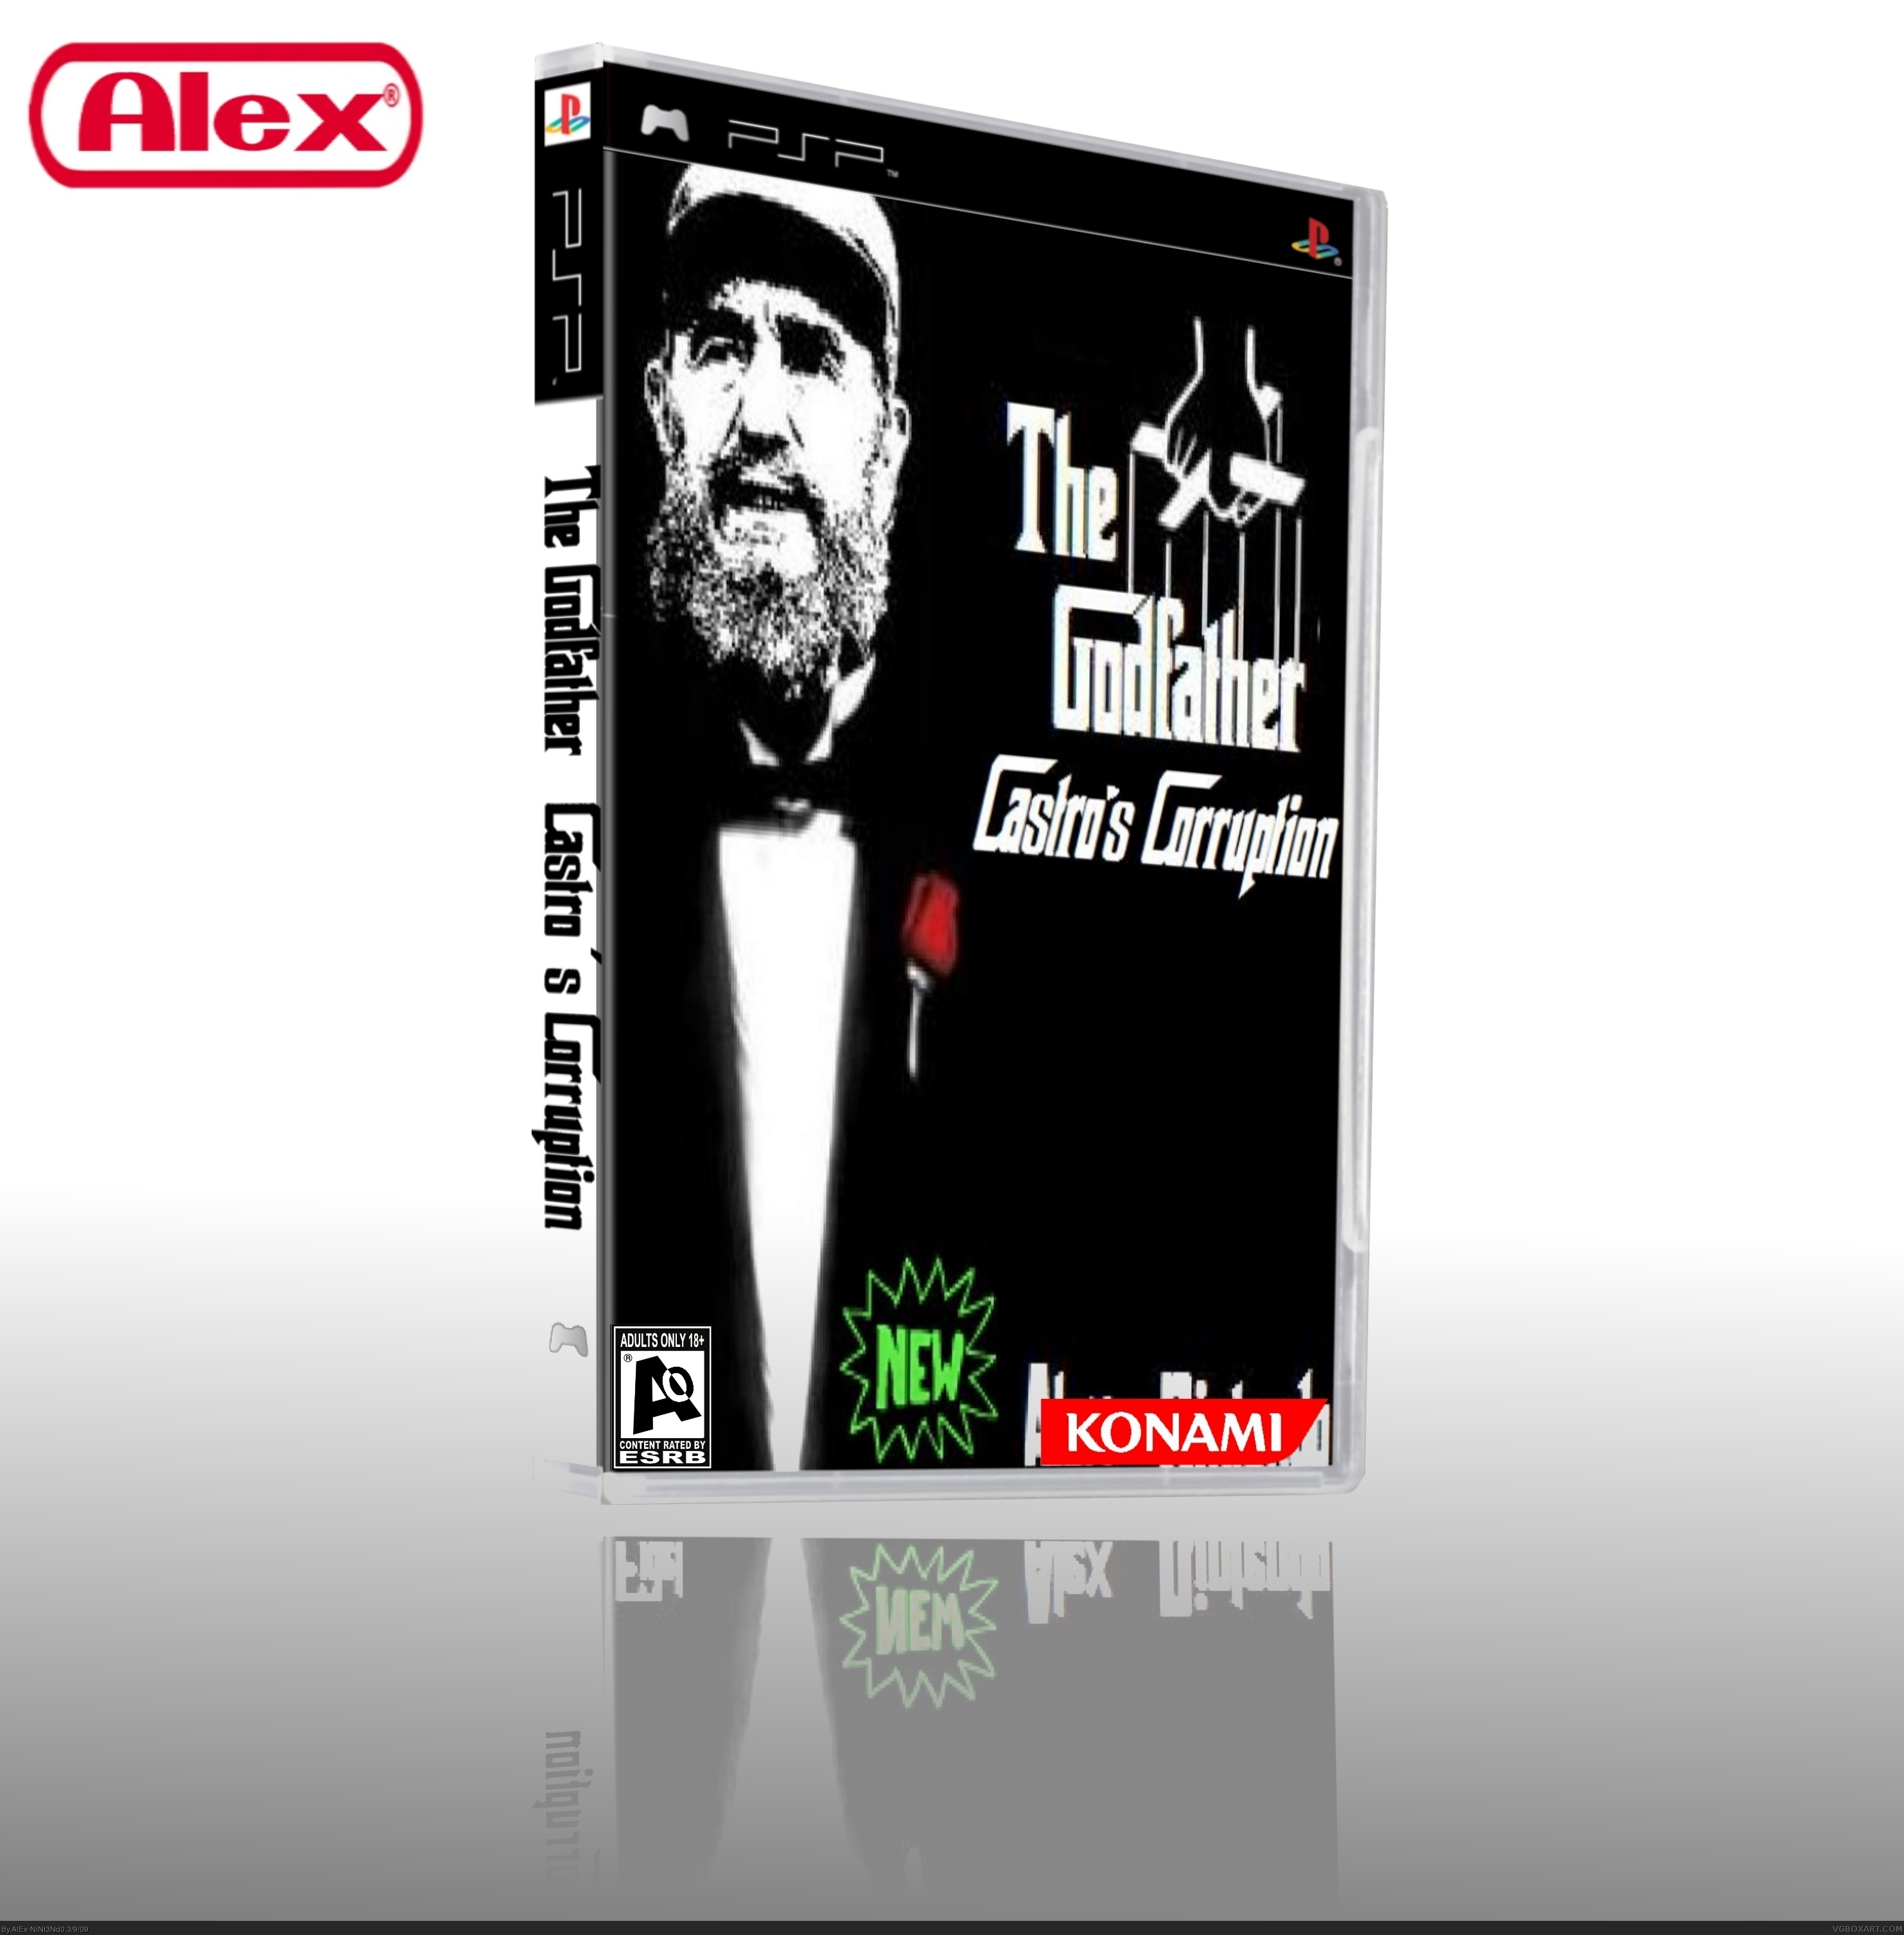 The NEW Godfather: Castro's Corruption box cover